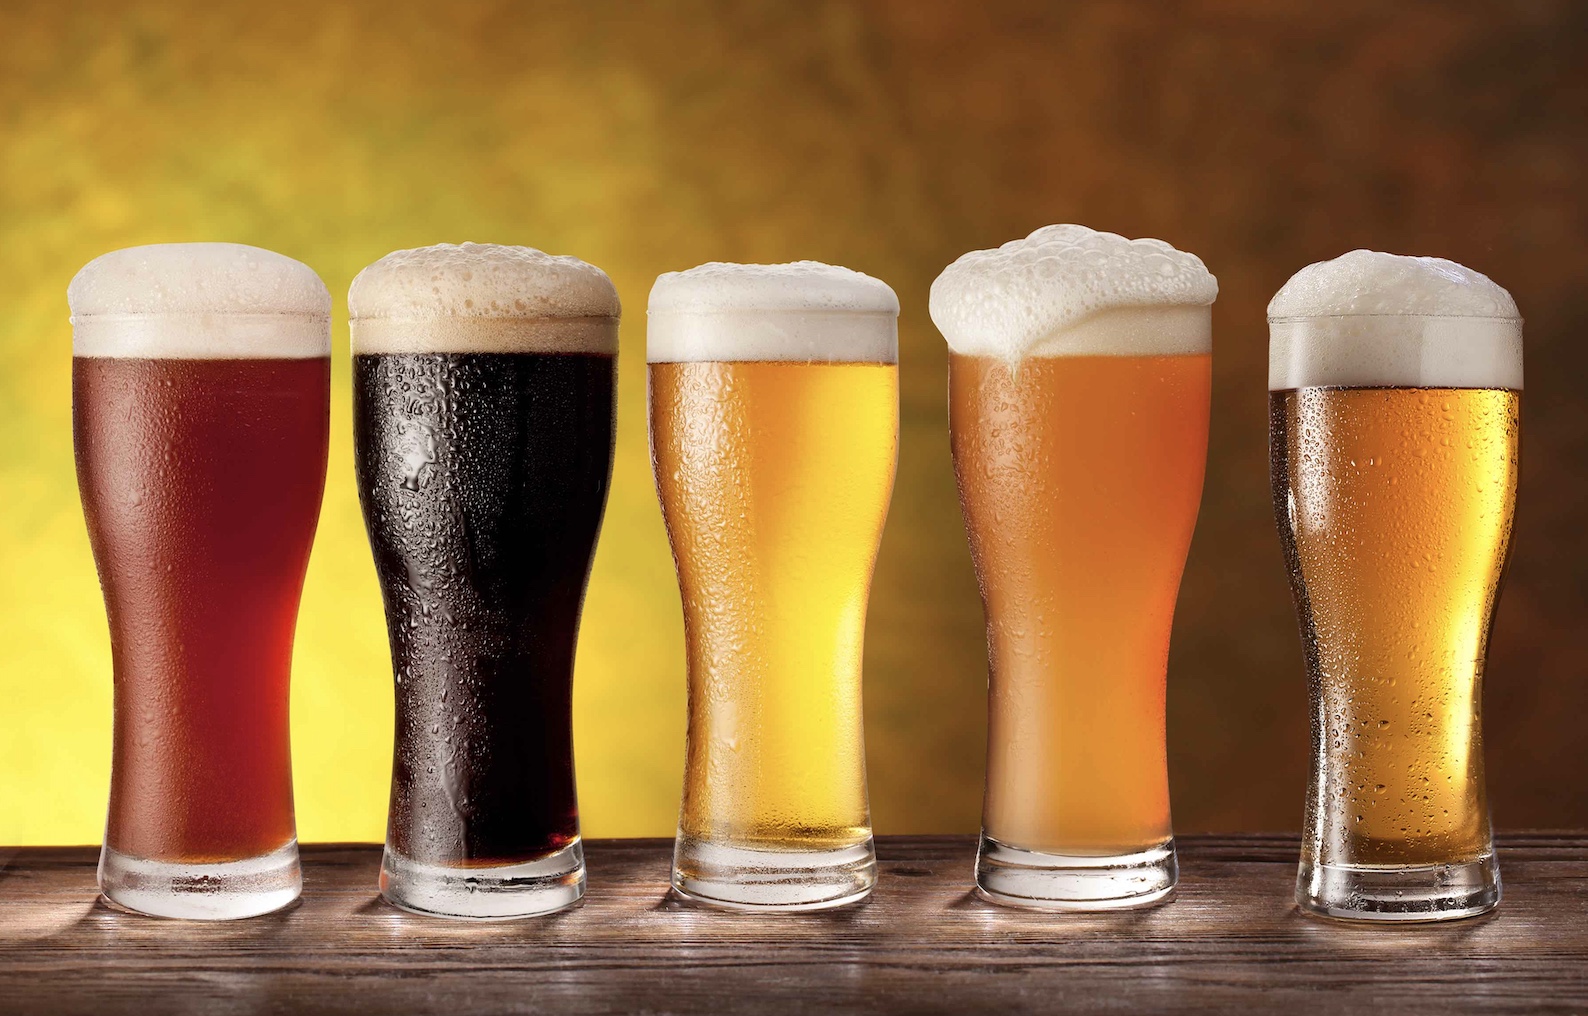 Богатството от вкусове и историята на бирата привличат най-много потребителите